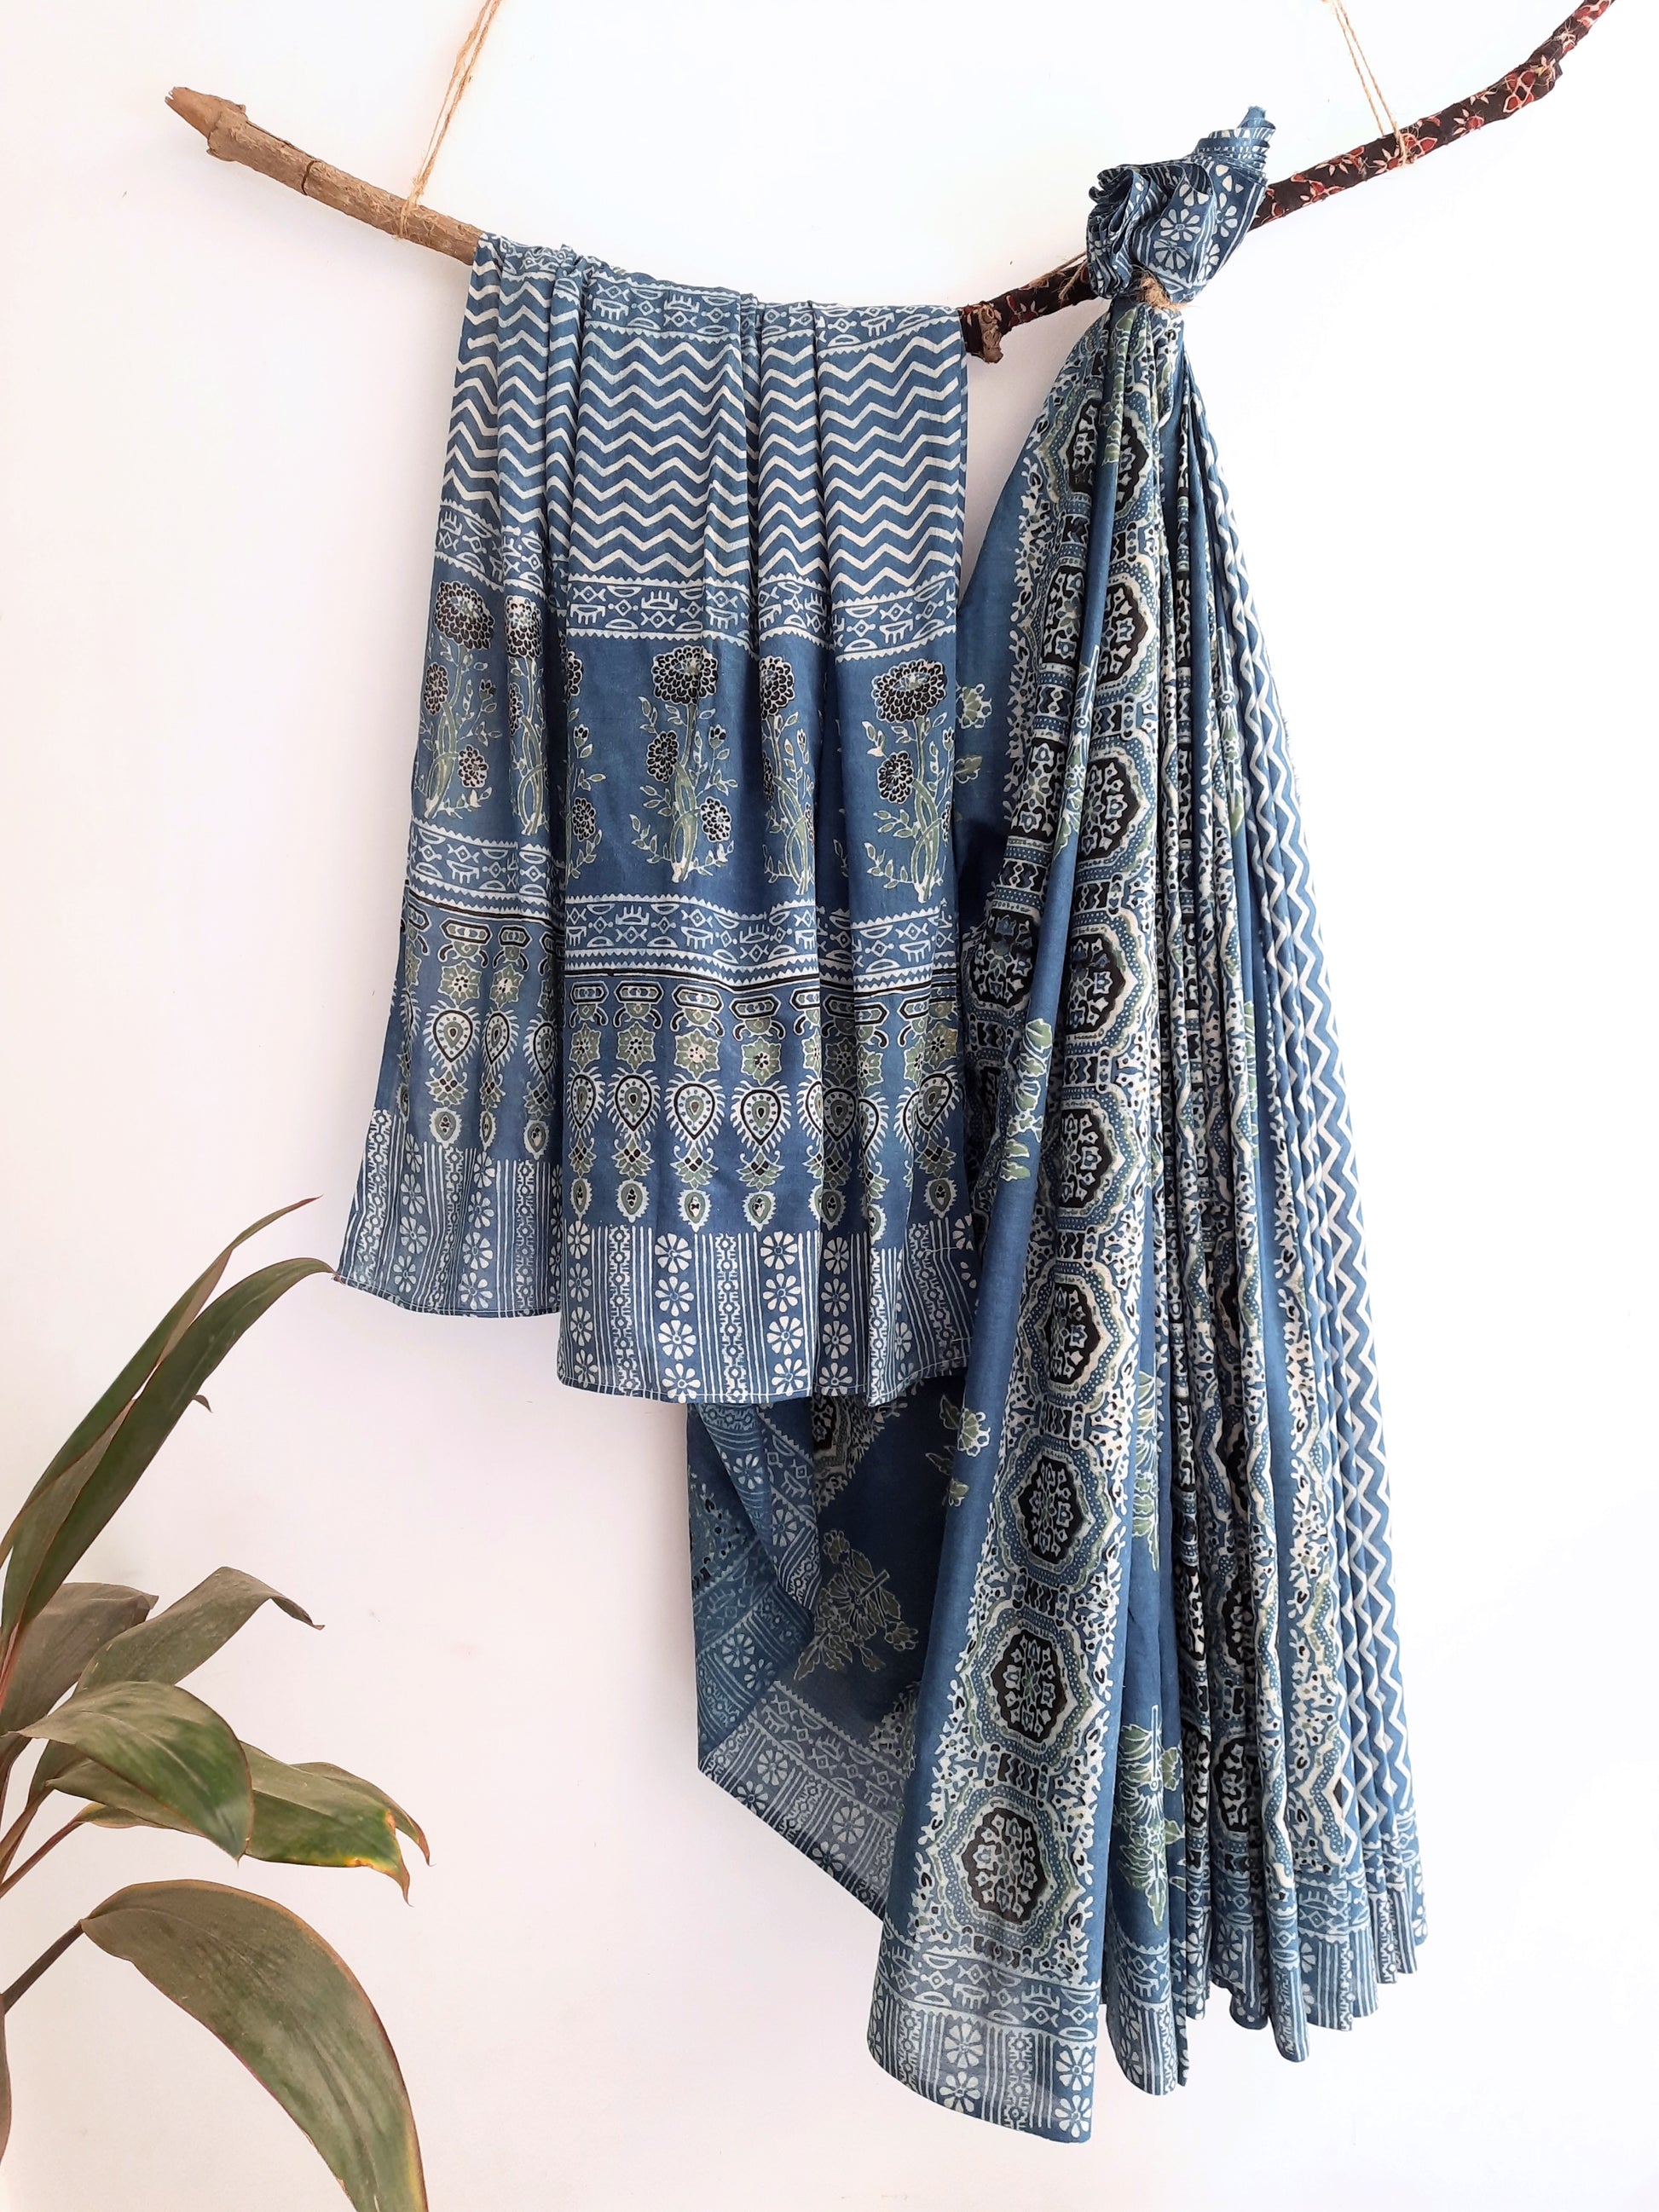 Indigo ajrakh prints cotton saree, Indigo dyed saree, Slow fashion